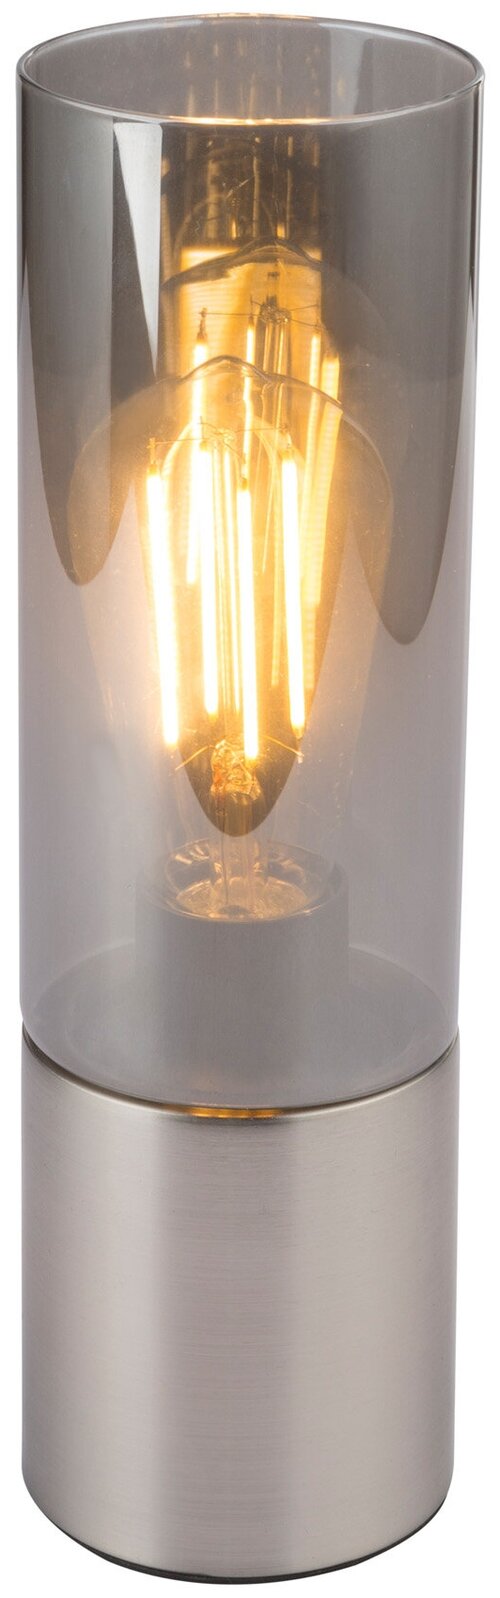 Лампа декоративная Globo Lighting Annika 21000N, E27, 25 Вт, дымчатый